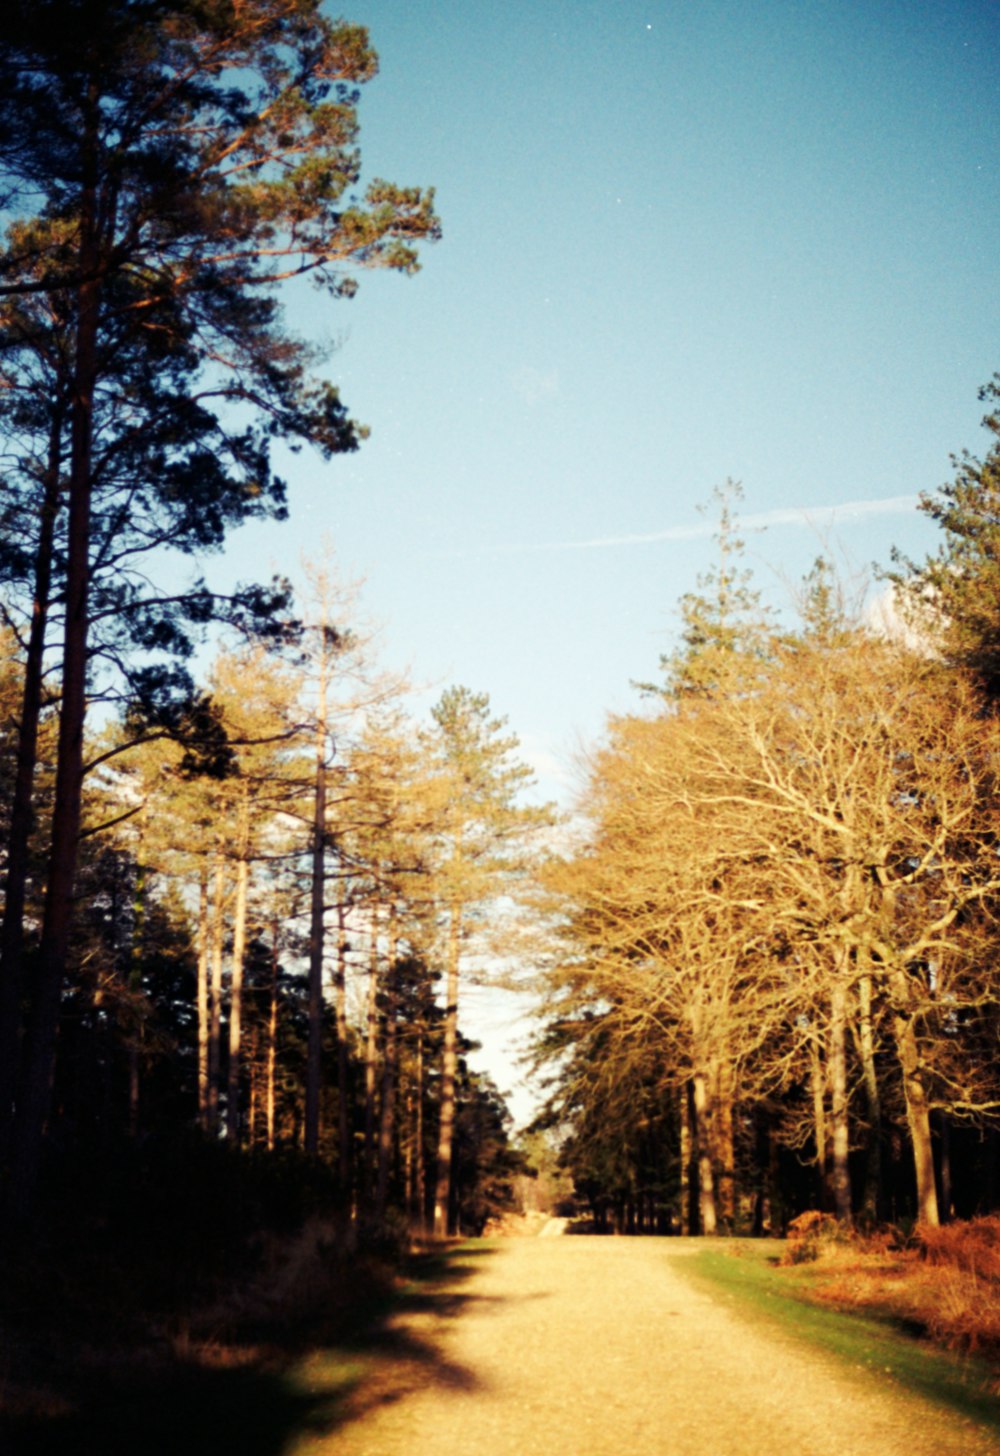 Uma estrada de terra no meio de uma floresta